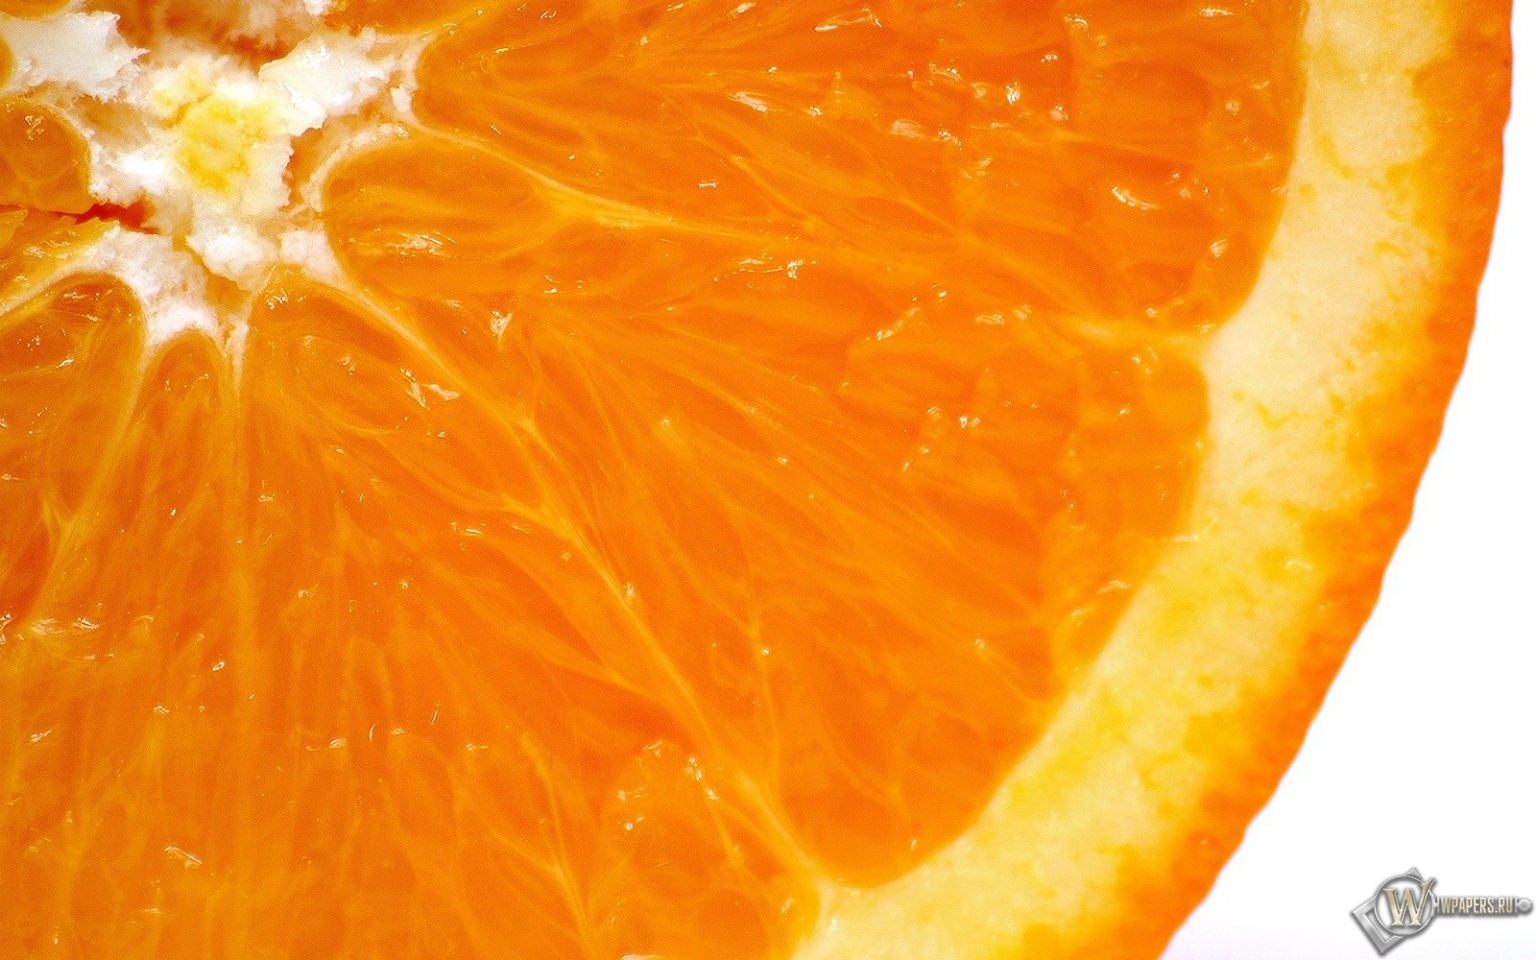 Большой апельсин 1536x960